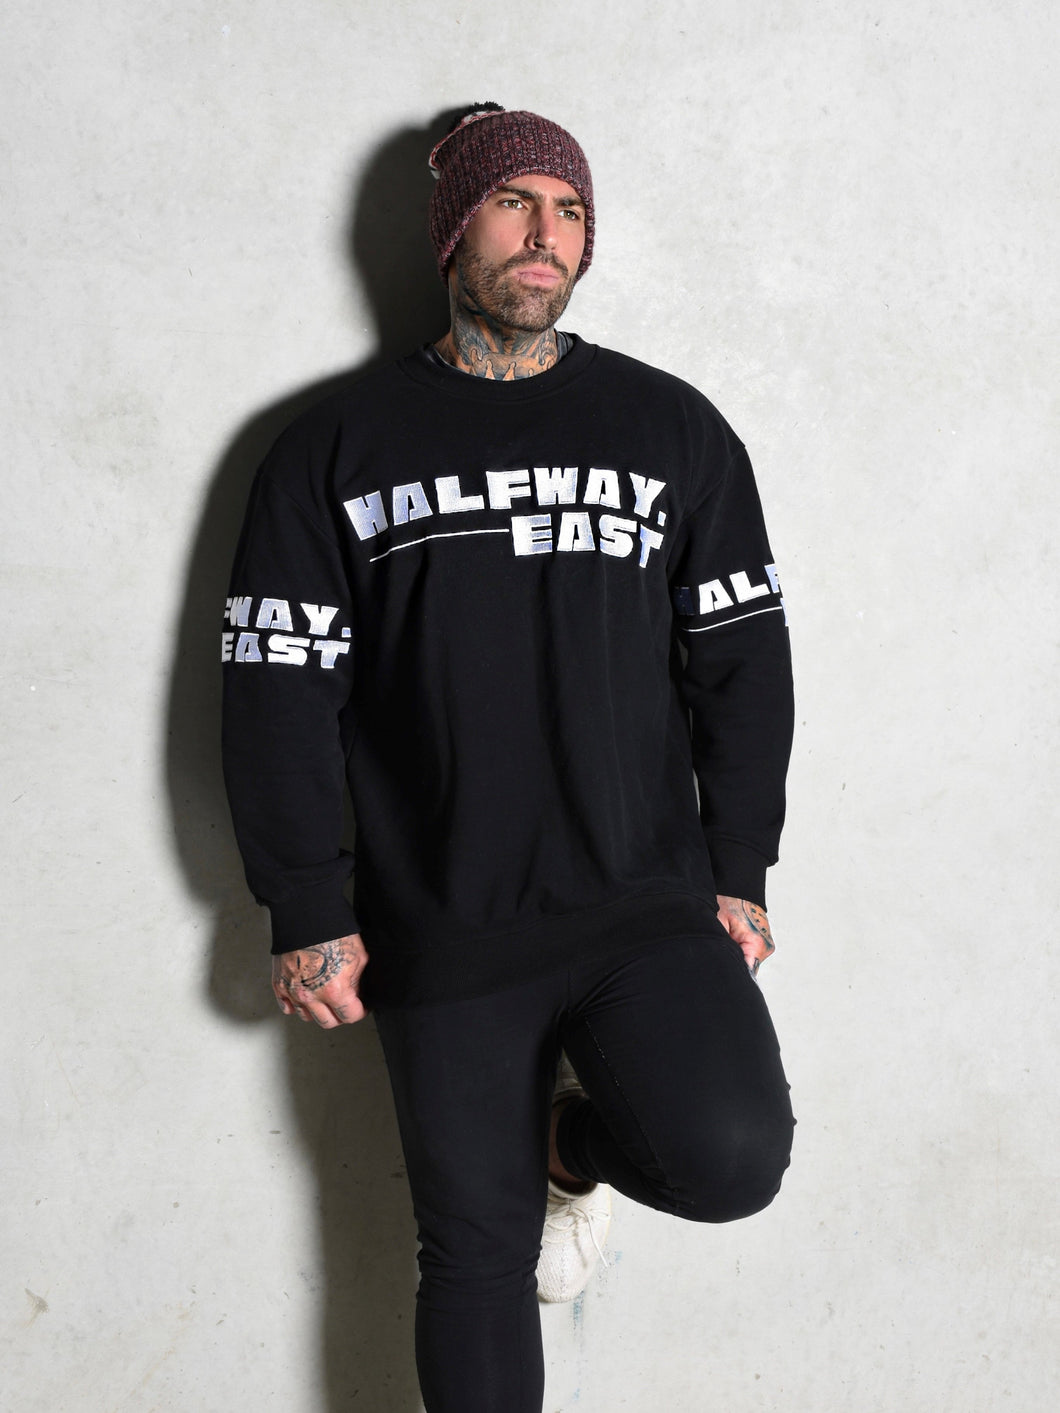 HALFWAY EAST Men's Crew Neck sweater - Black